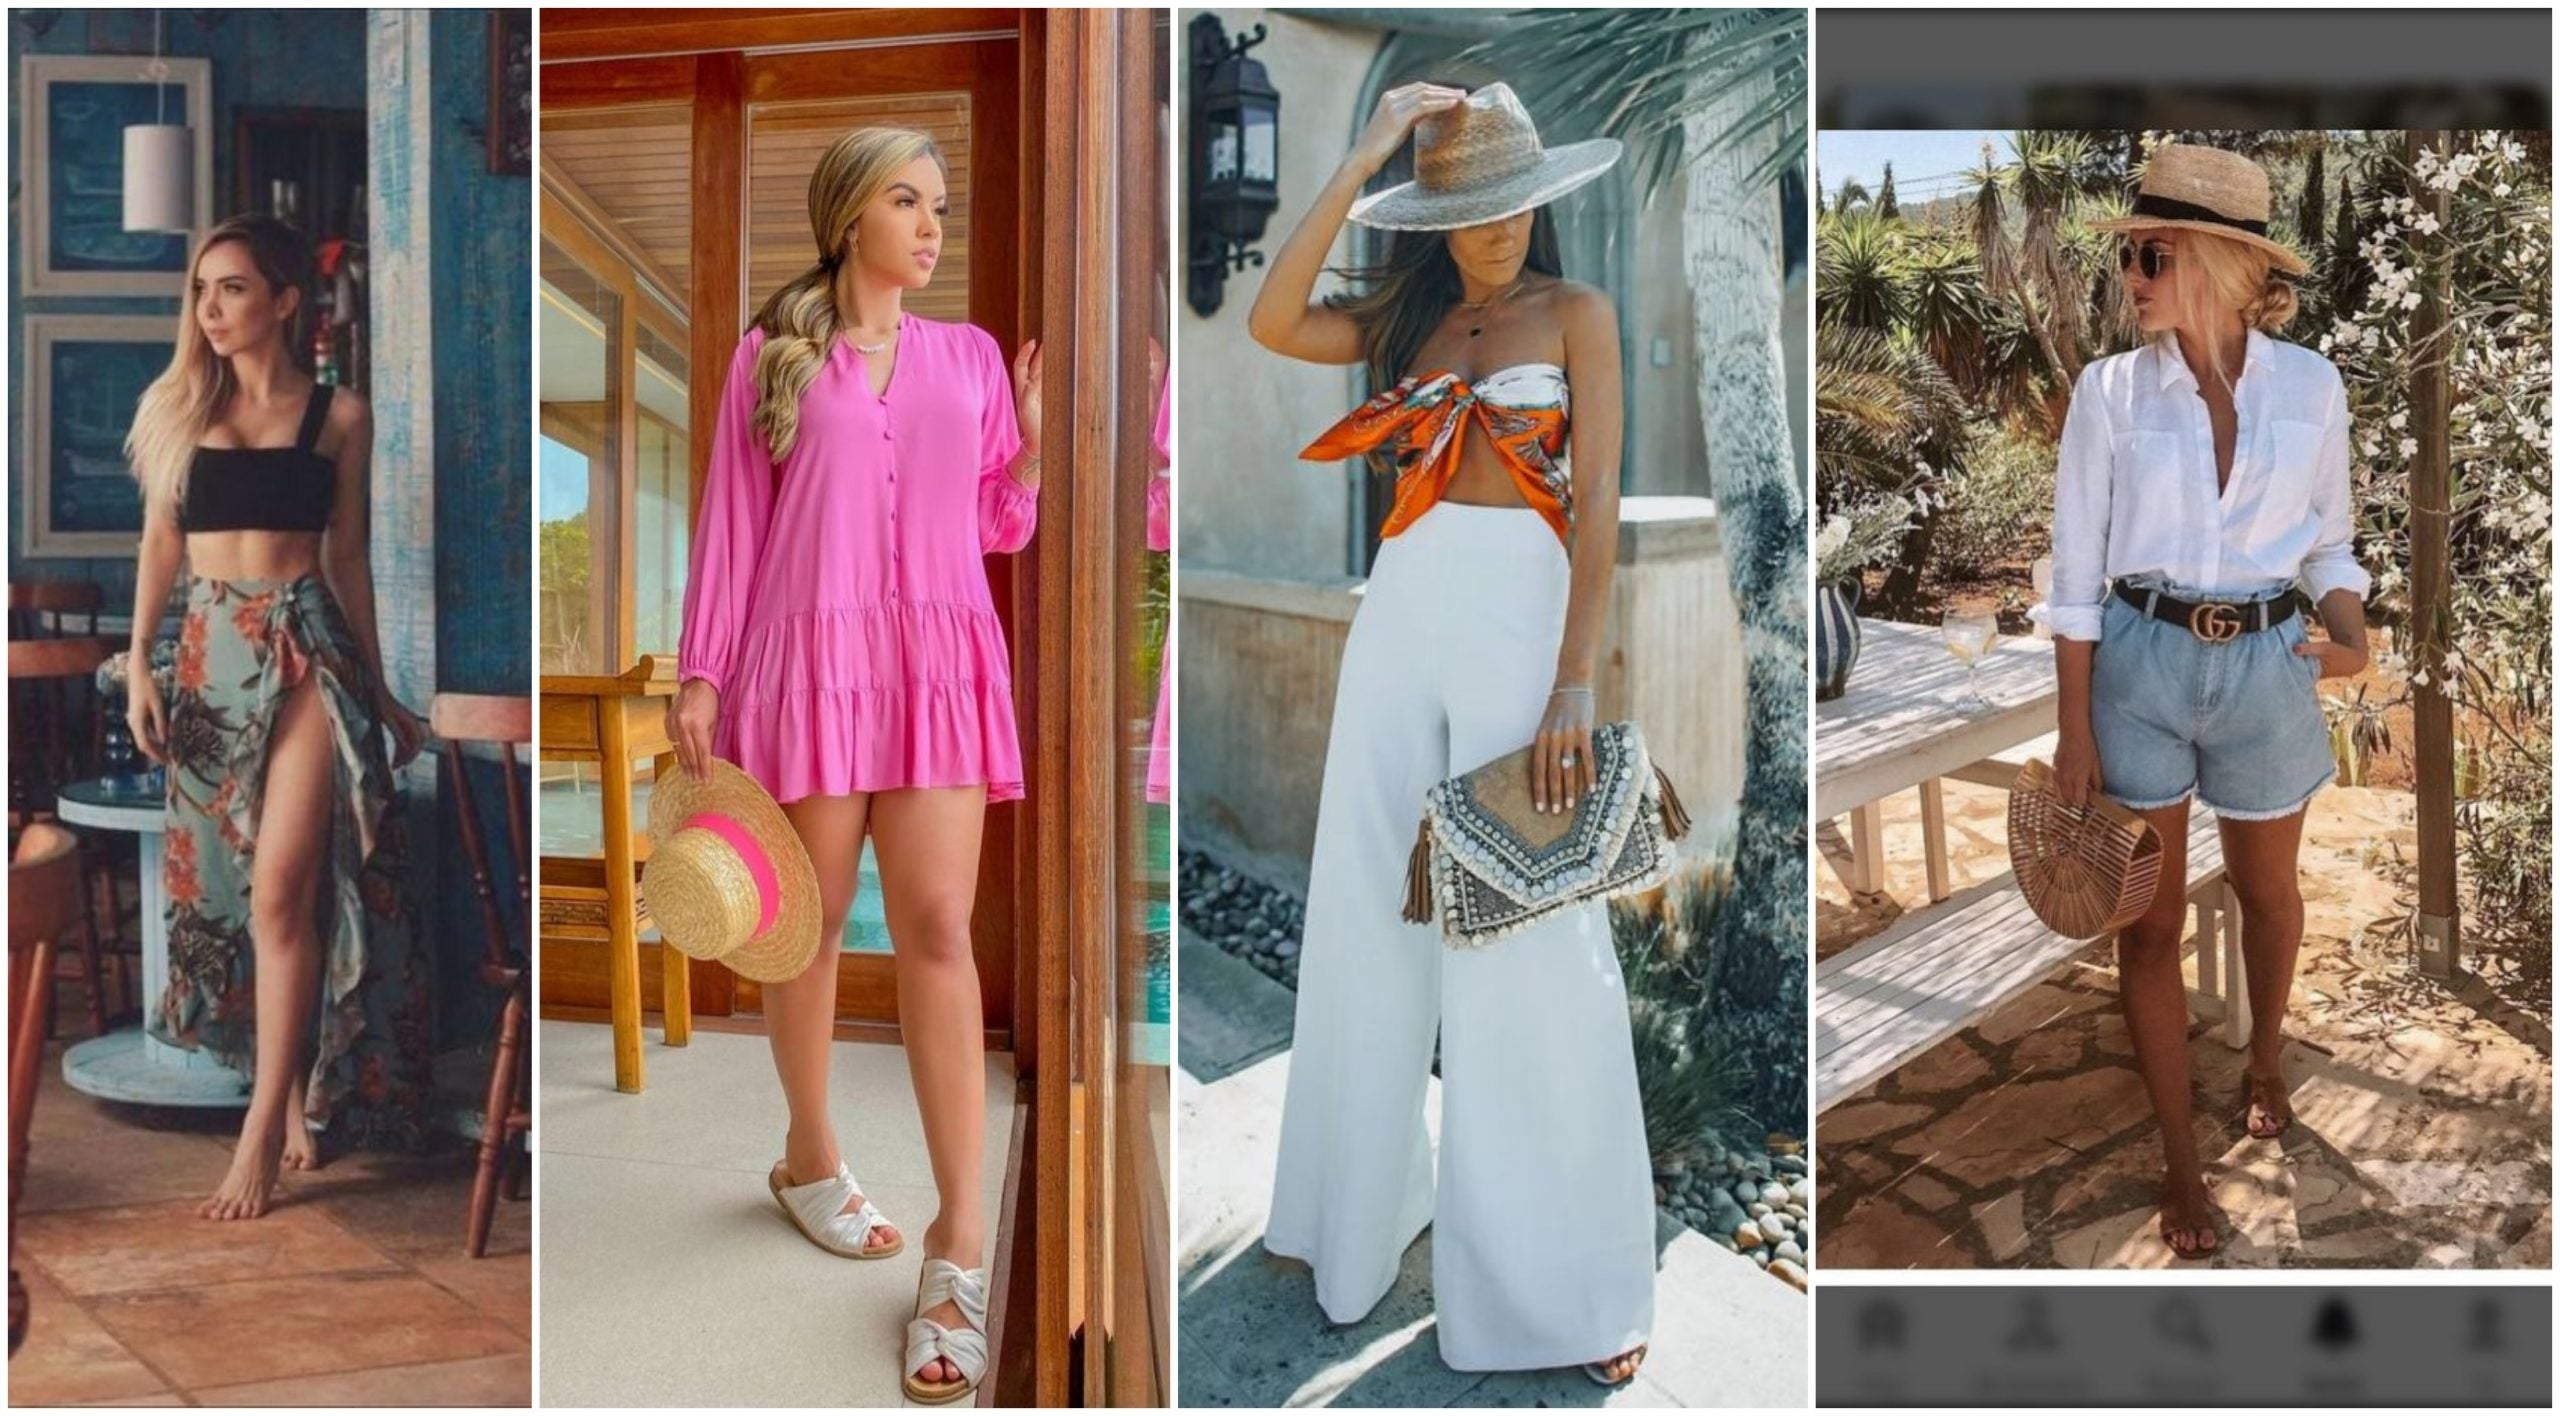 Moda: 10 ideas para armar un look de playa tal y como visten las